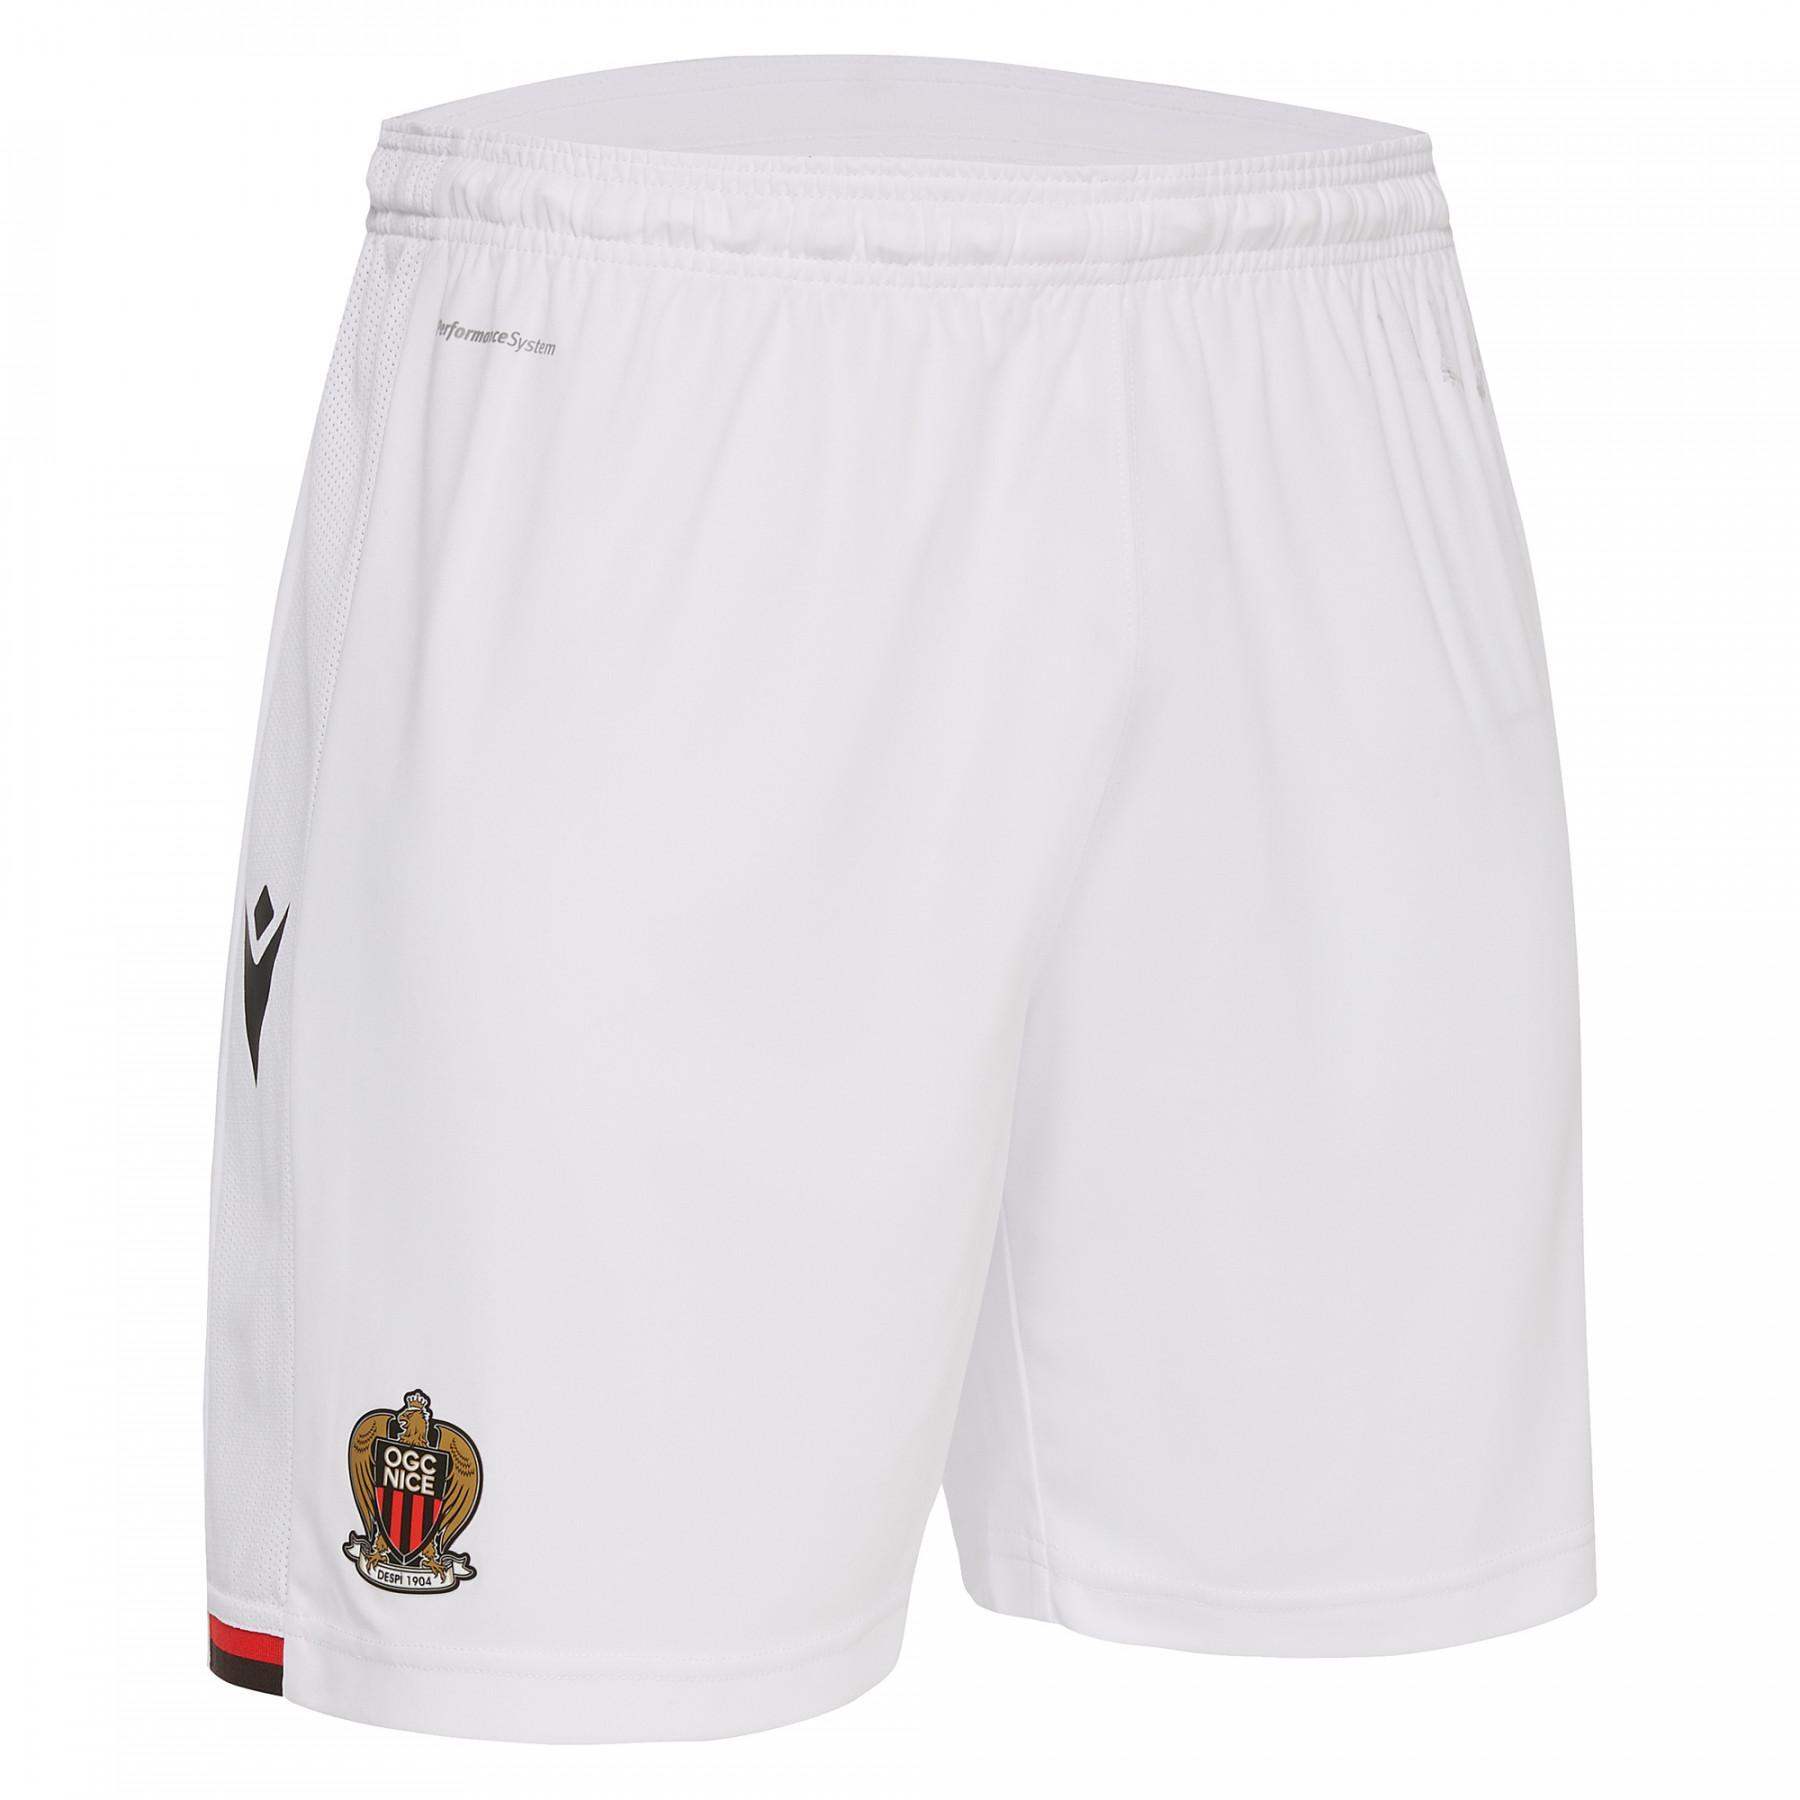 Pantalones cortos para exteriores OGC Nice 19/20